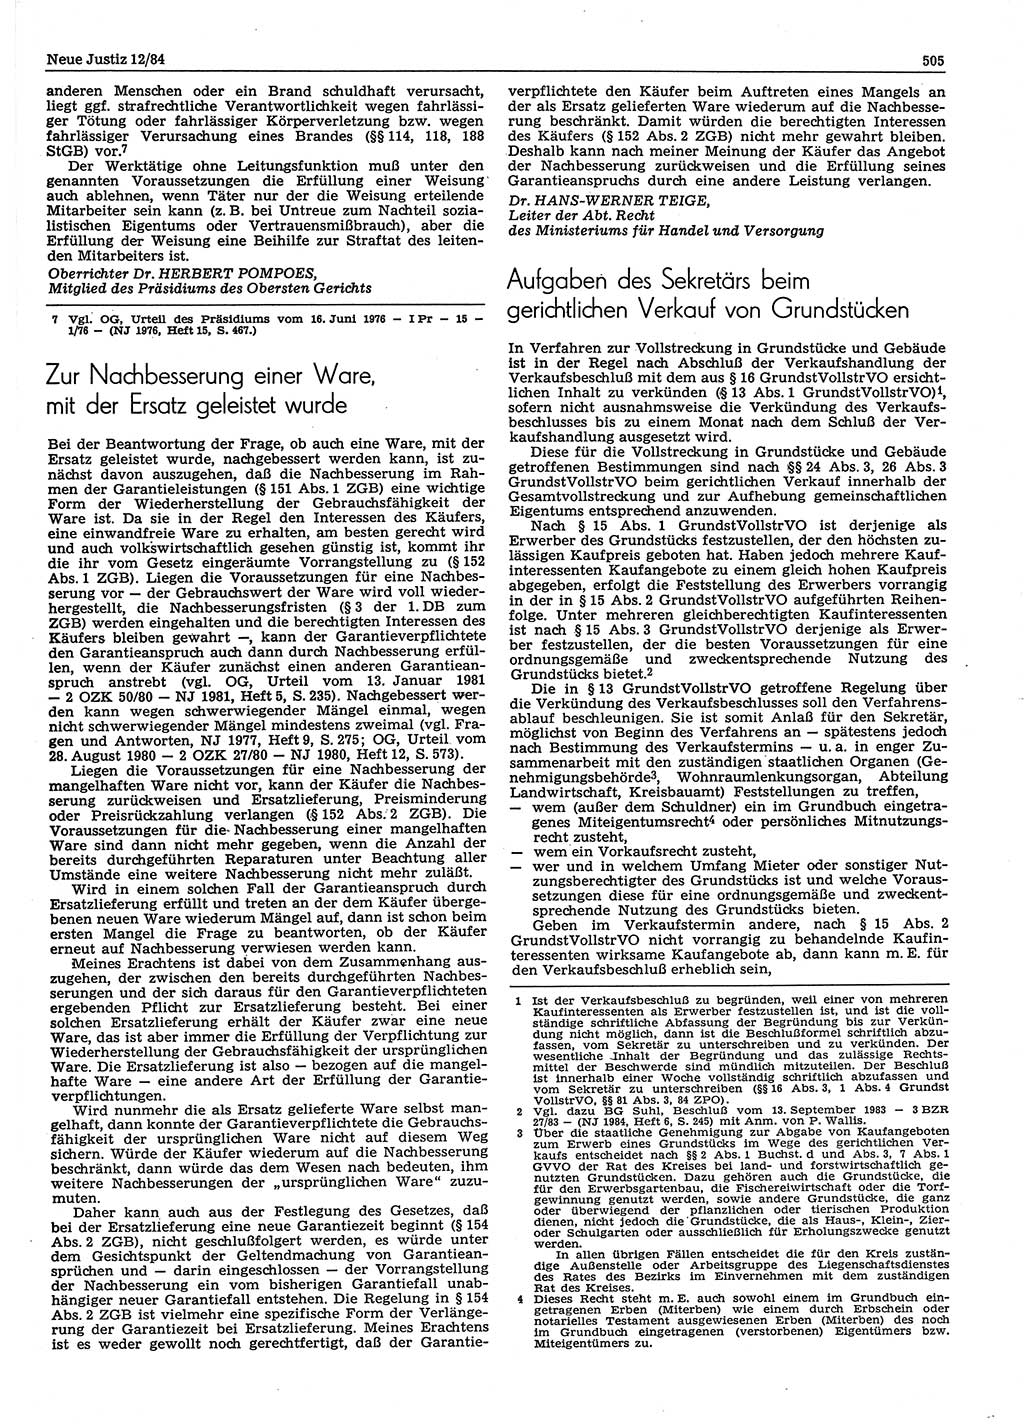 Neue Justiz (NJ), Zeitschrift für sozialistisches Recht und Gesetzlichkeit [Deutsche Demokratische Republik (DDR)], 38. Jahrgang 1984, Seite 505 (NJ DDR 1984, S. 505)